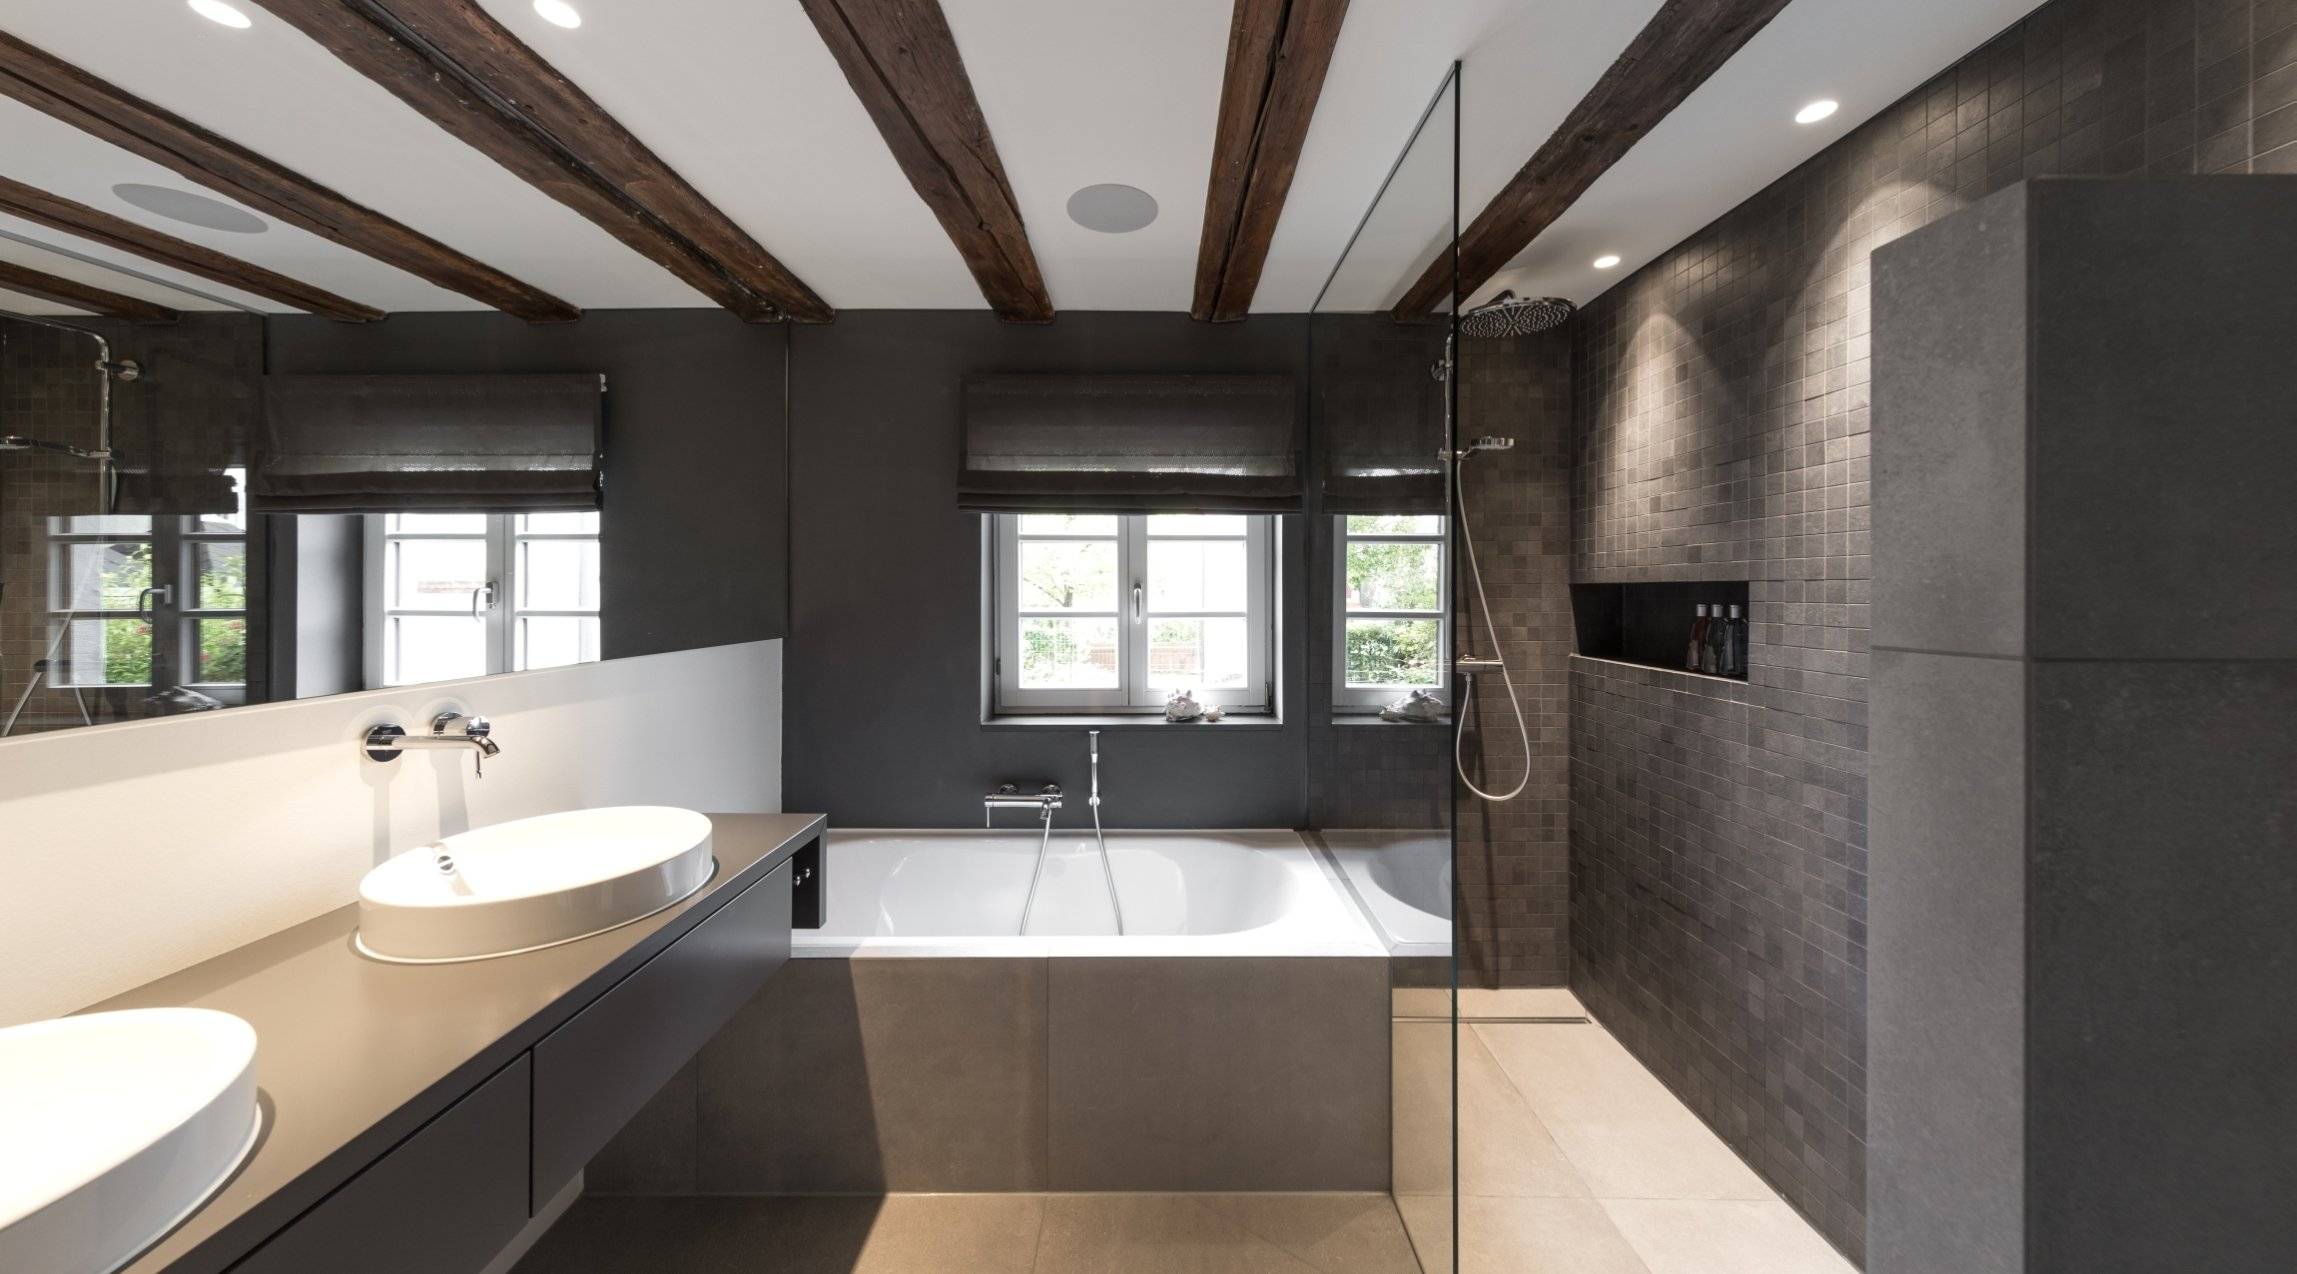 Думаете какой сделать потолок в ванной комнате? Обзор видов и рекомендации по выбору